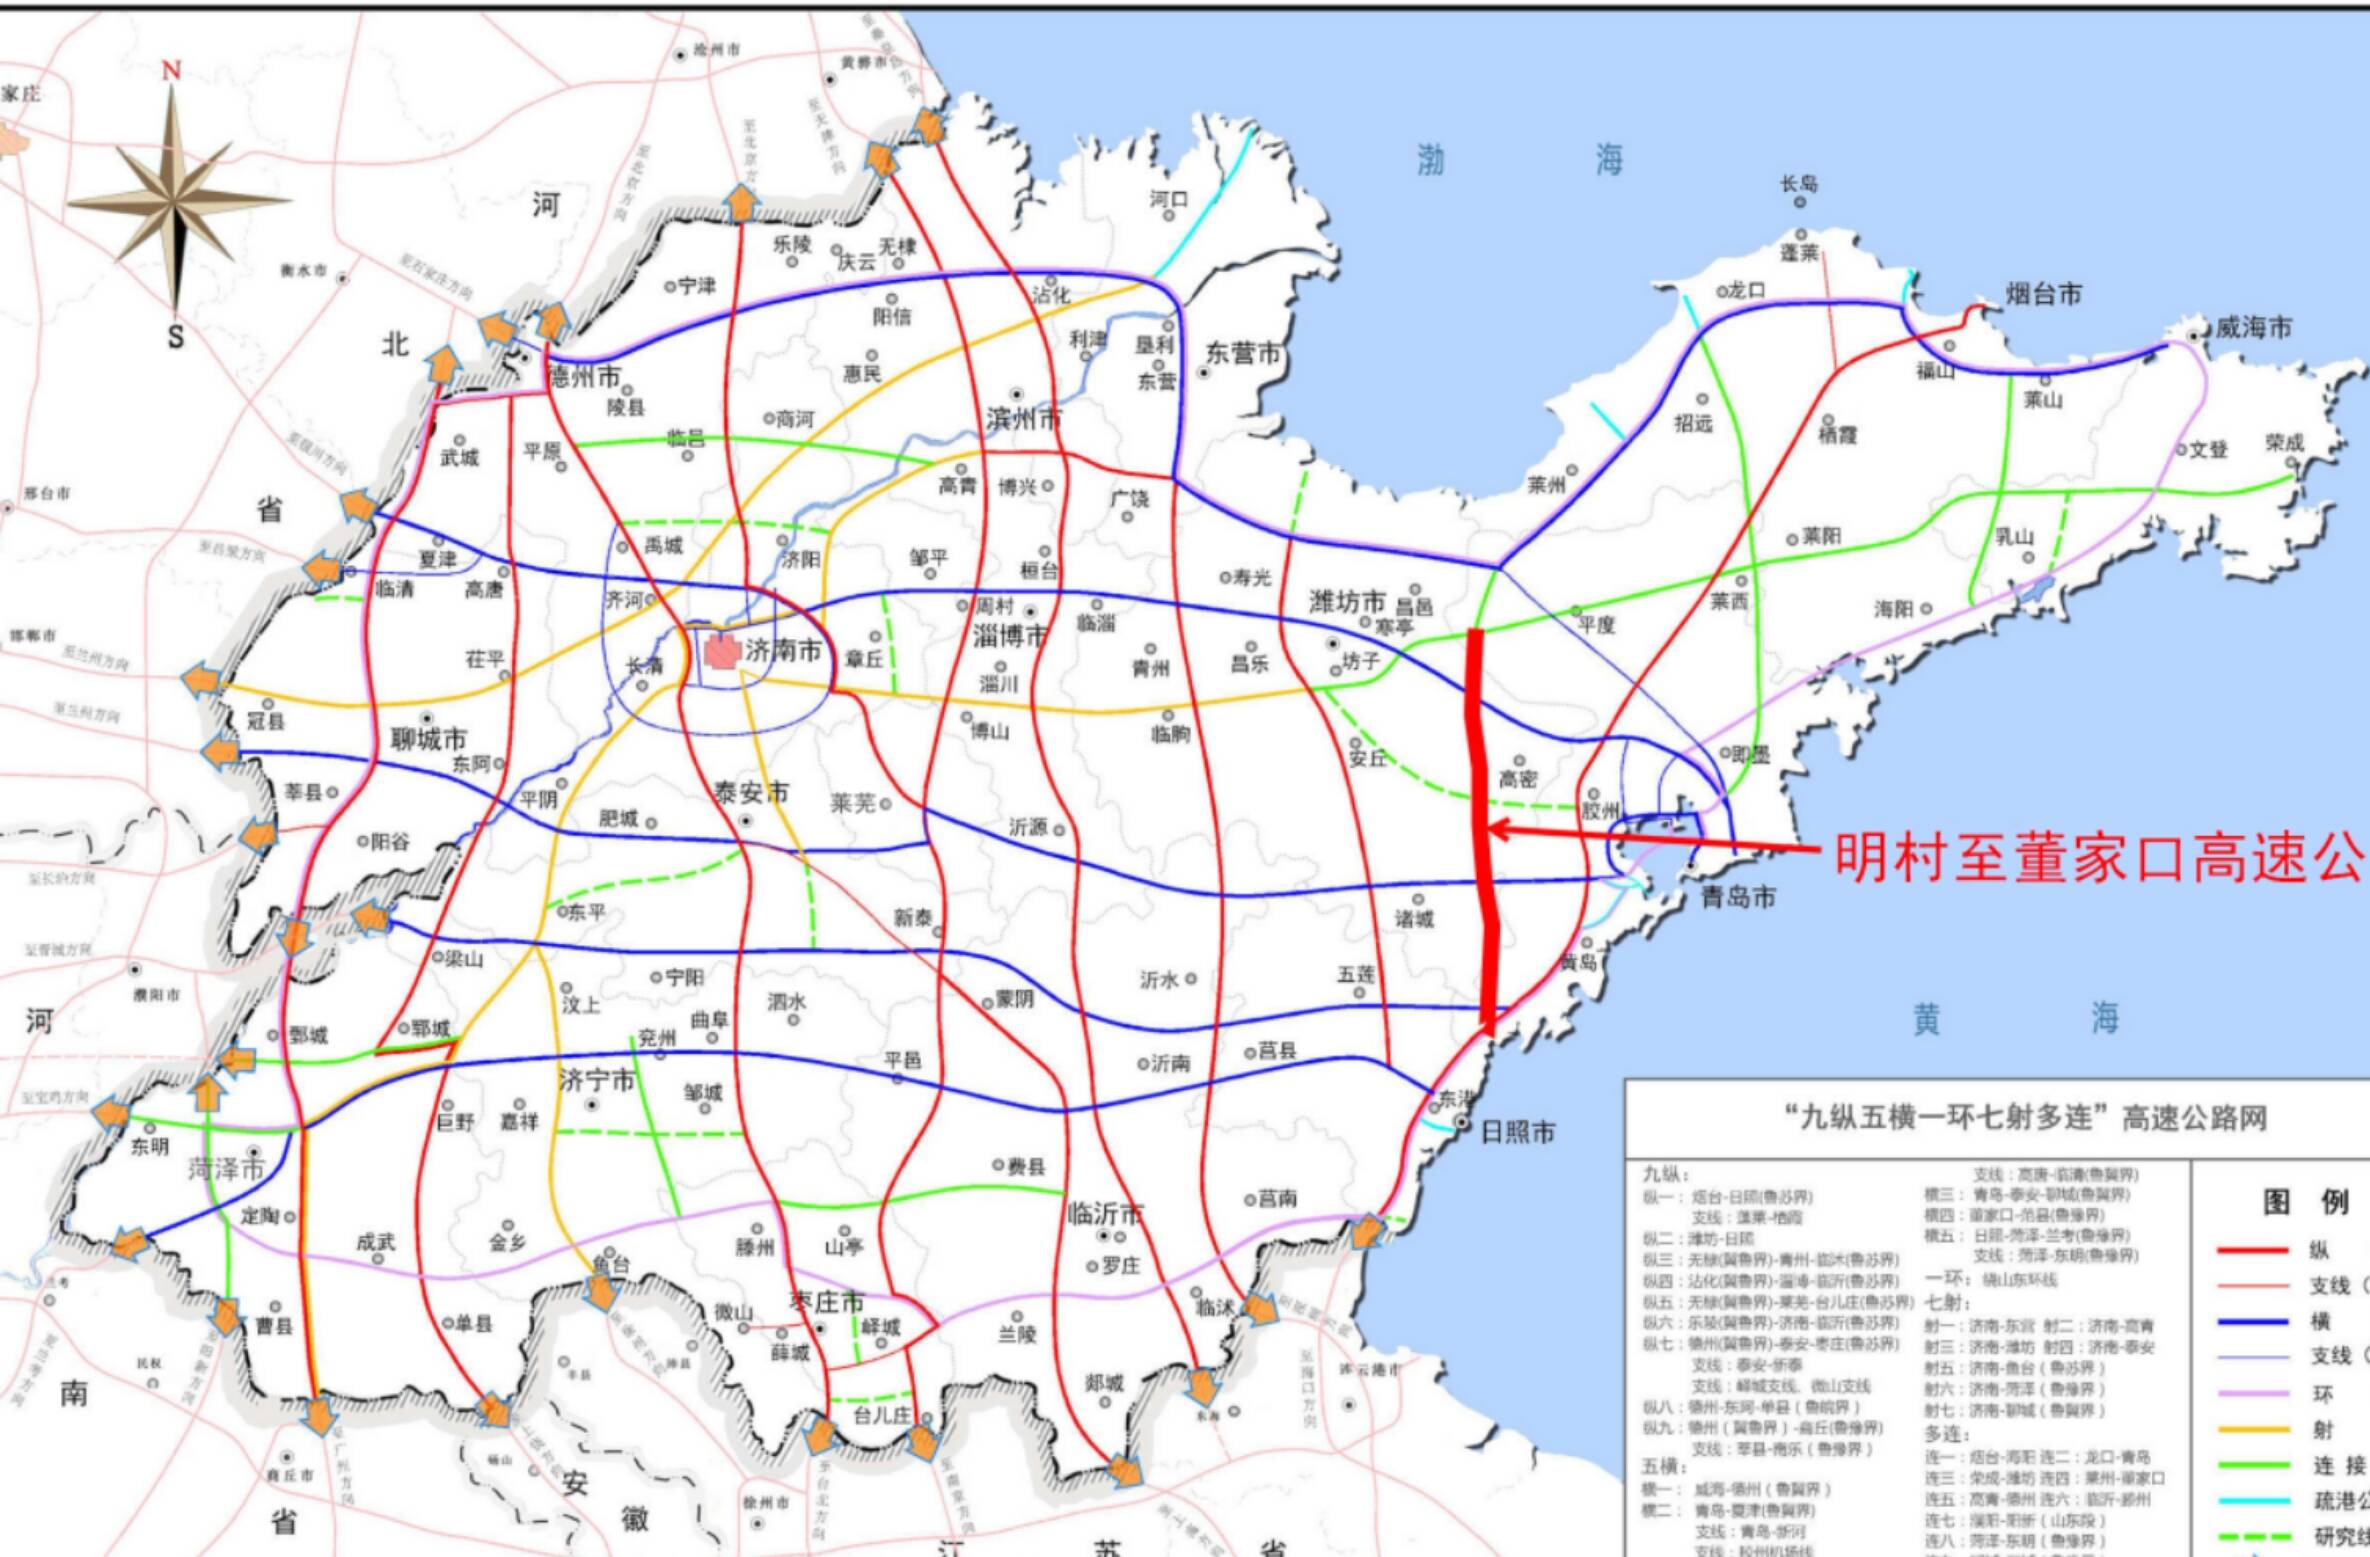 明村至董家口高速公路项目获得核准批复